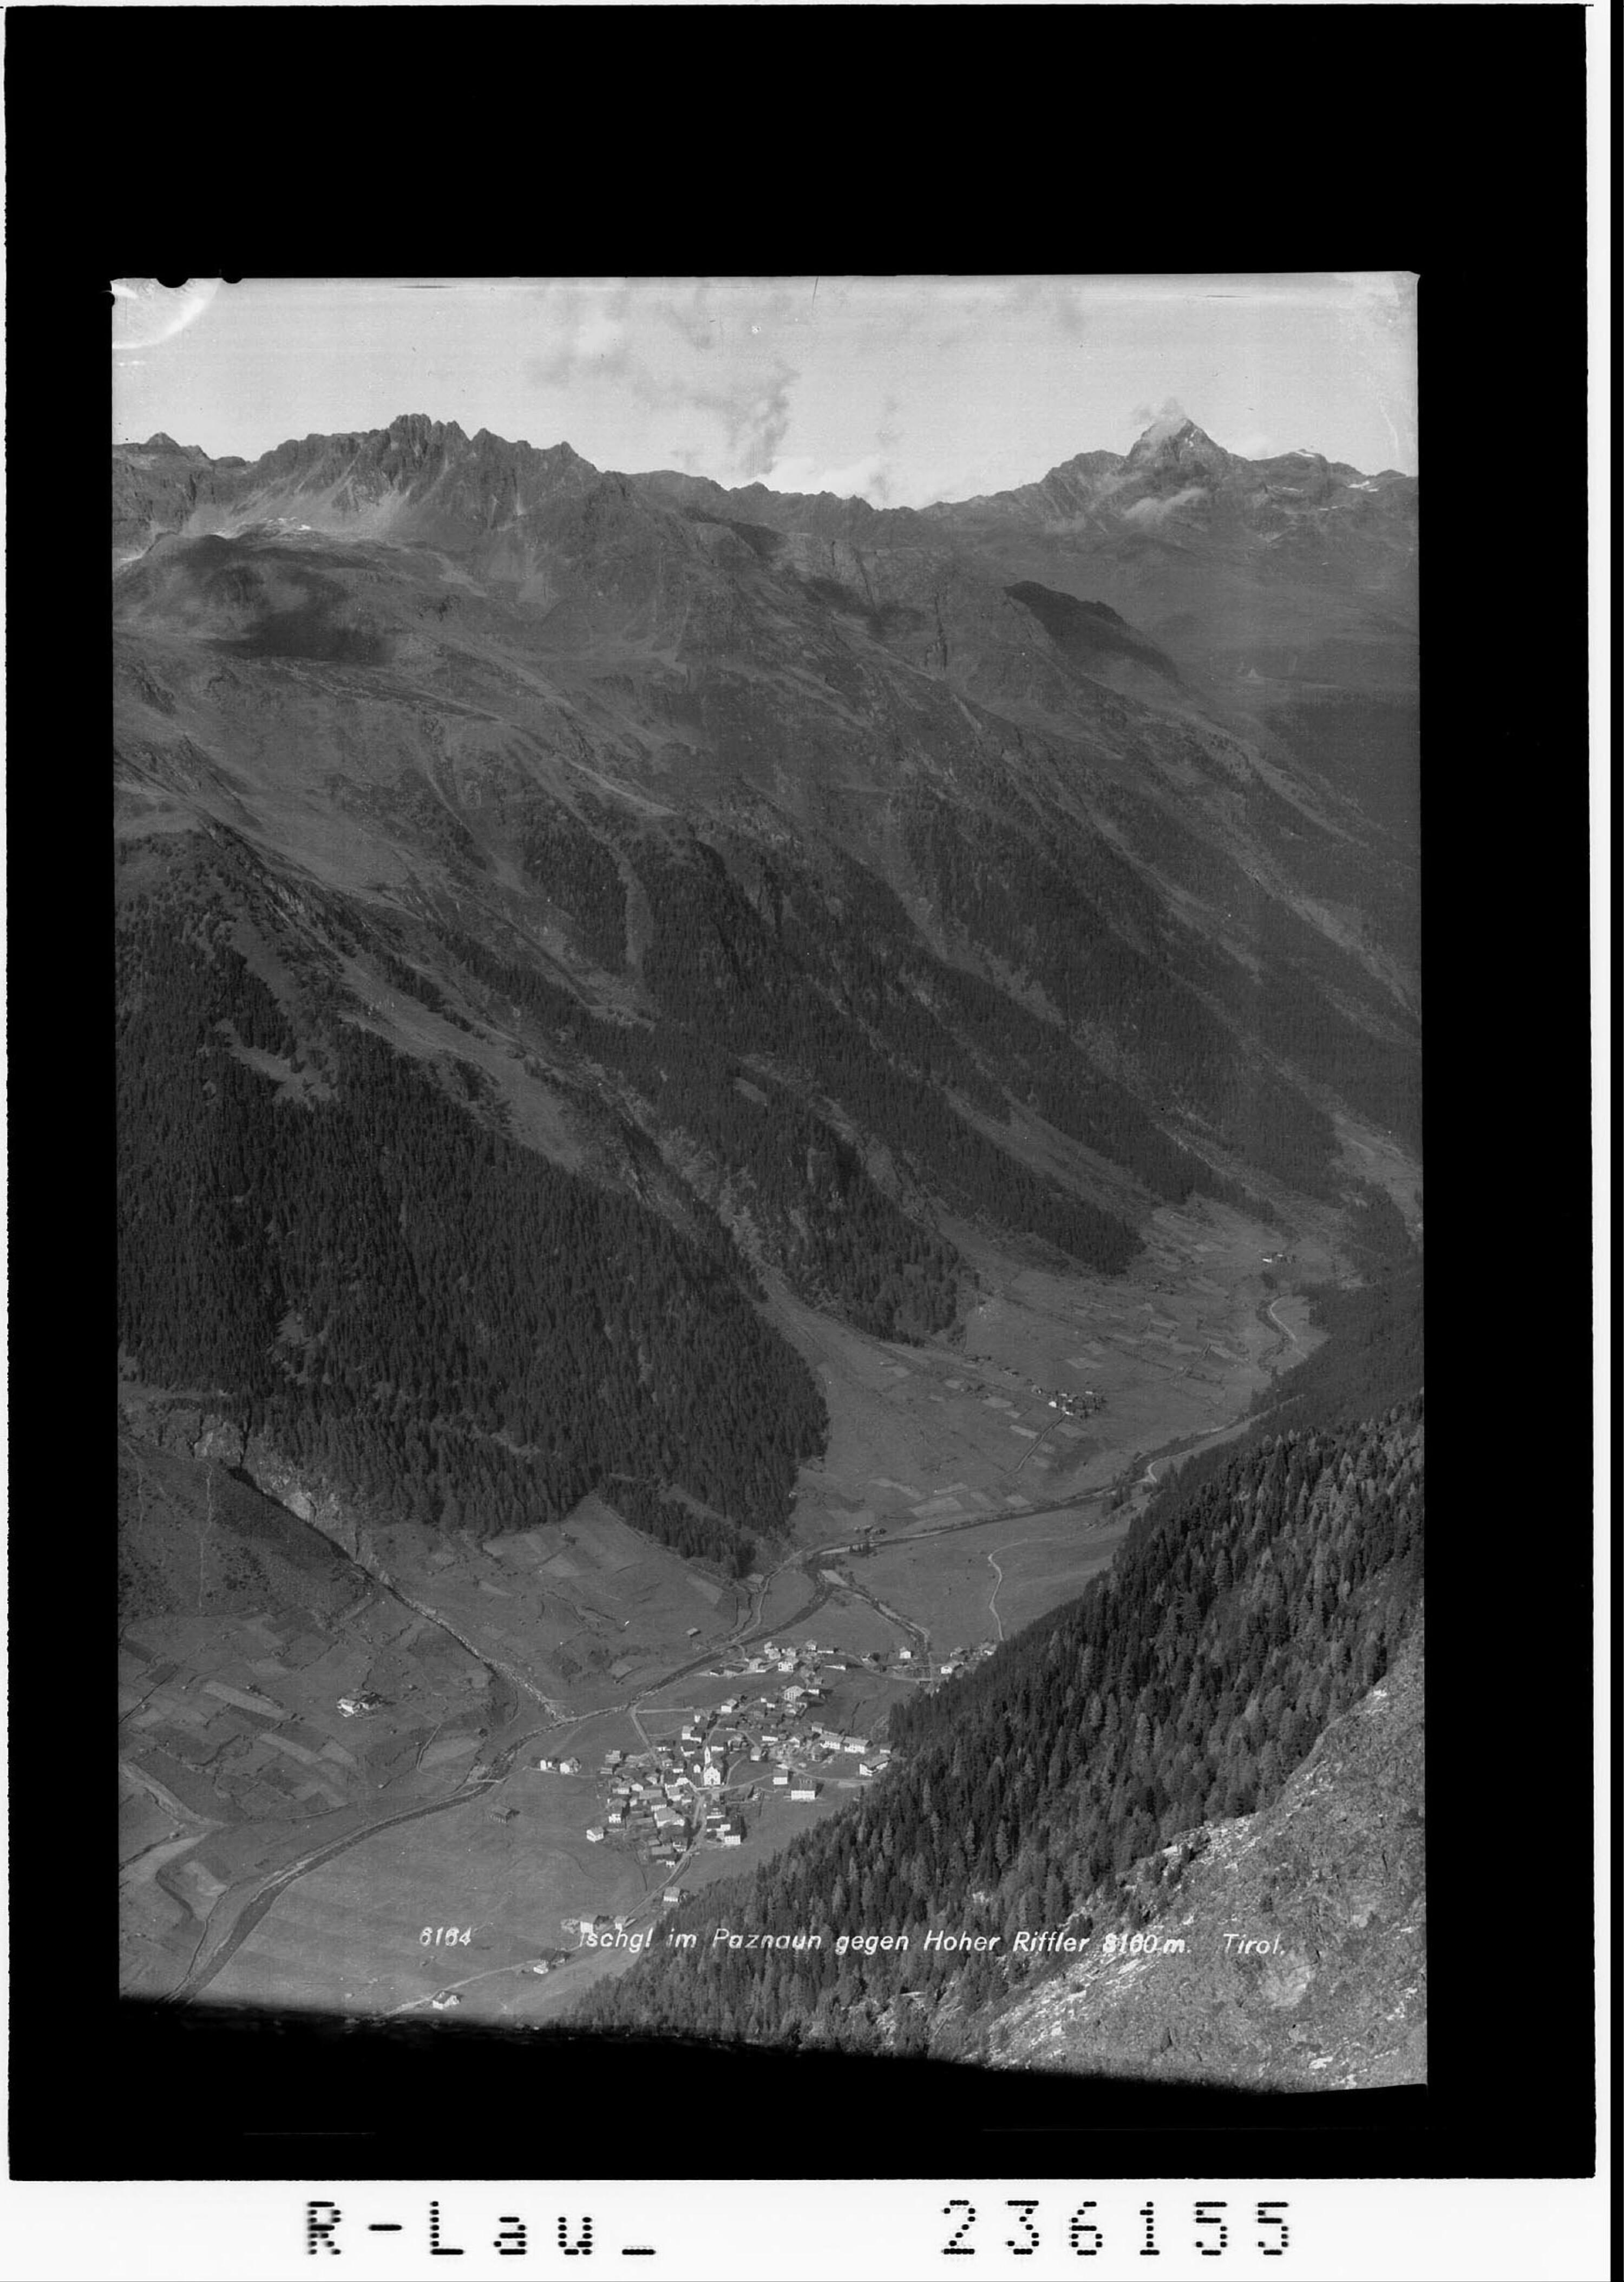 Ischgl im Paznaun gegen Hoher Riffler 3160 m / Tirol></div>


    <hr>
    <div class=